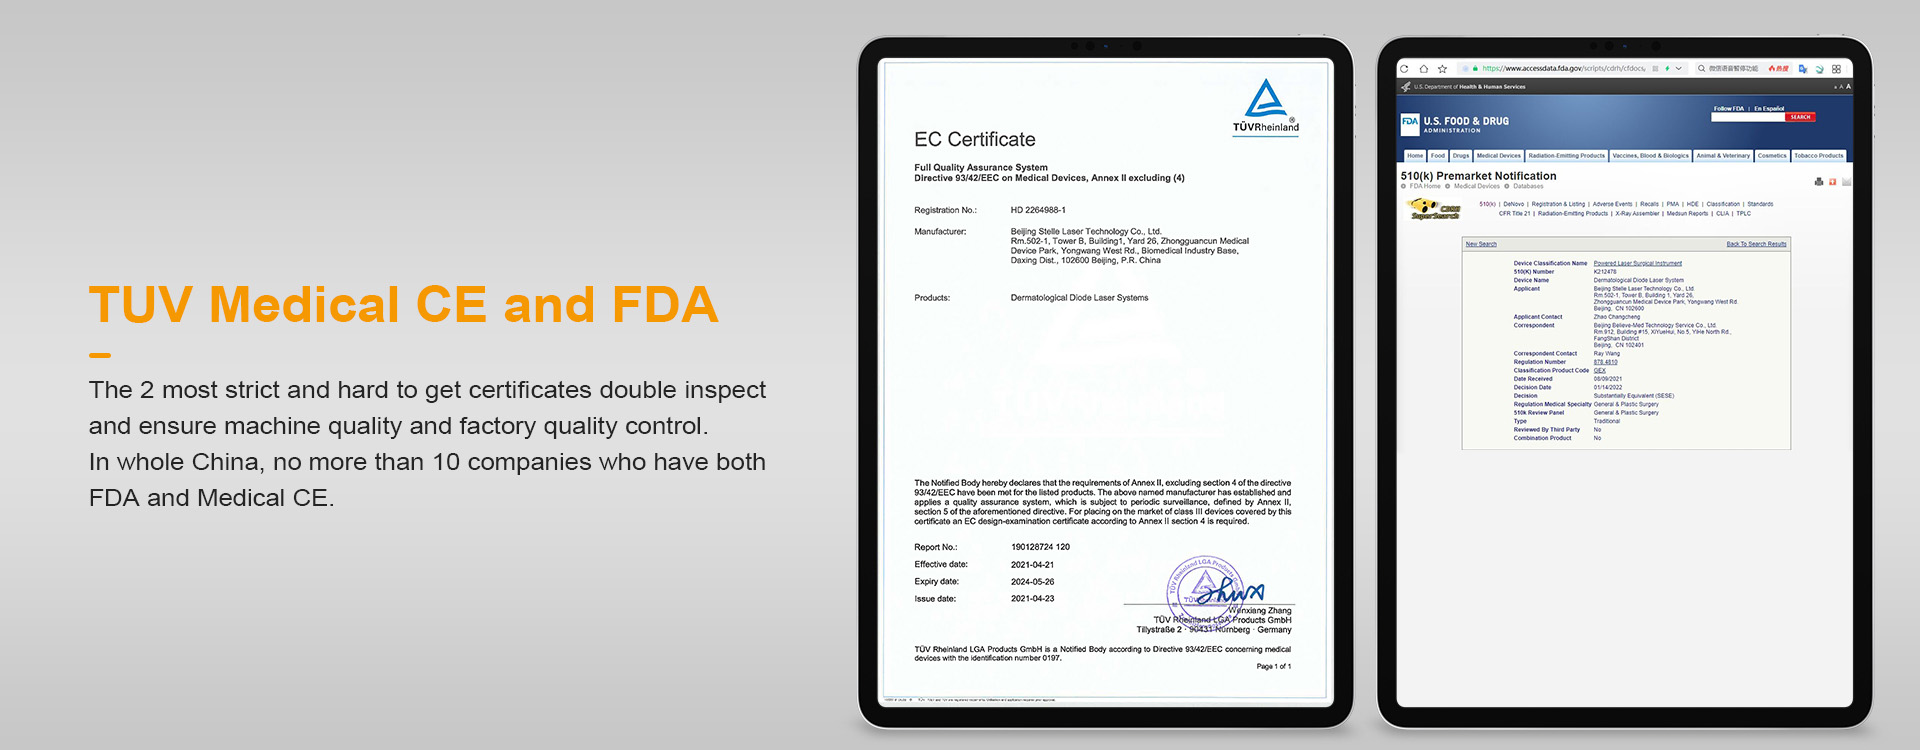 મેડિકલ CE અને FDA